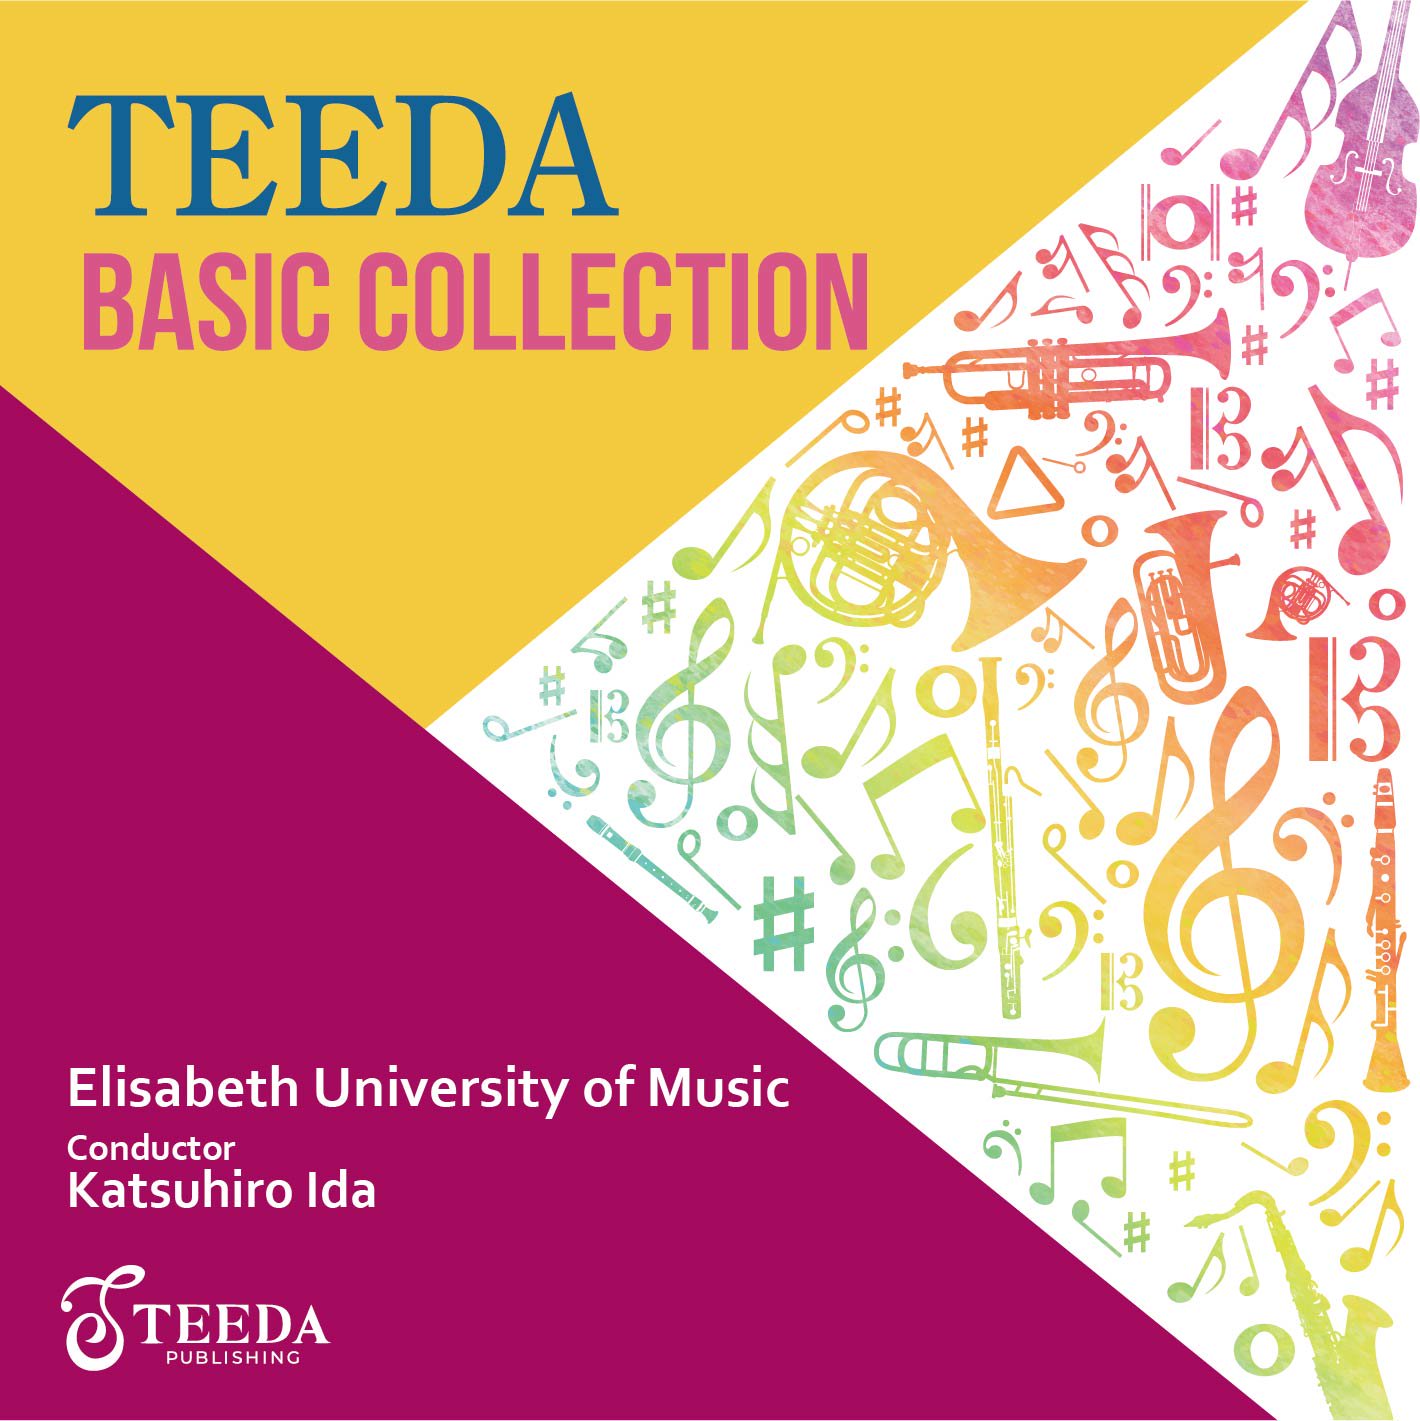 吹奏楽CD】TEEDA BASIC COLLECTION エリザベト音楽大学ウインドアンサンブル